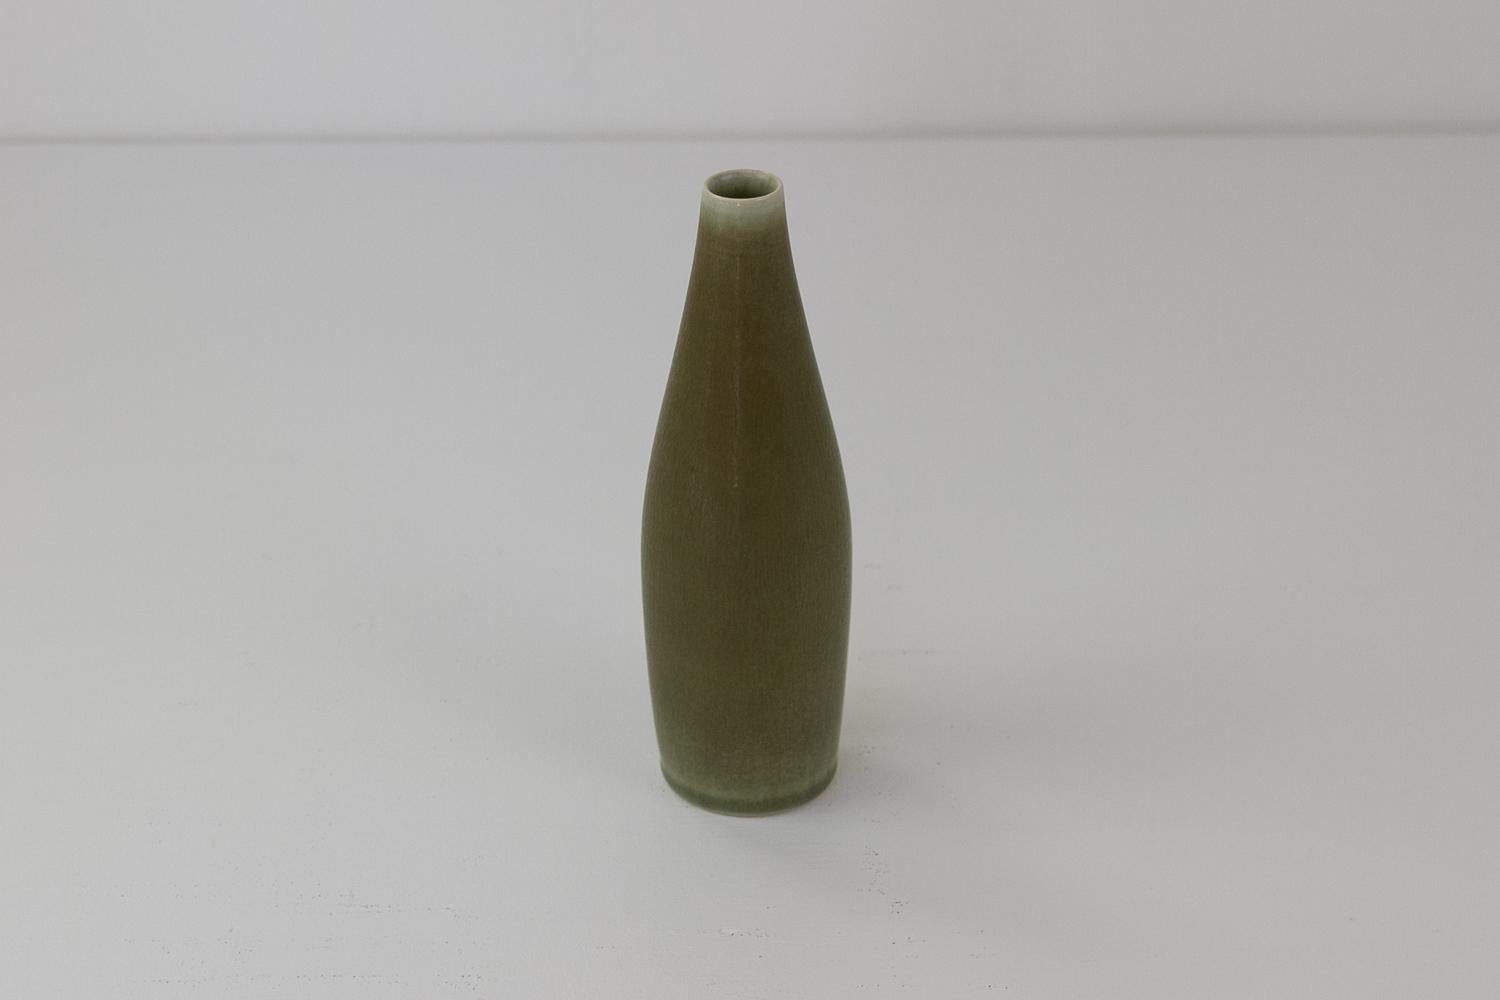 Danish Modern Ceramic Vase by Per Linnemann-Schmidt for Palshus, 1960s.
Torpedo shaped ceramic vase with hares fur glaze in green/sage by Palshus, Denmark.
Palshus was established by Annelise and Per Linnemann-Schmidt in 1948 and closed in 1972.